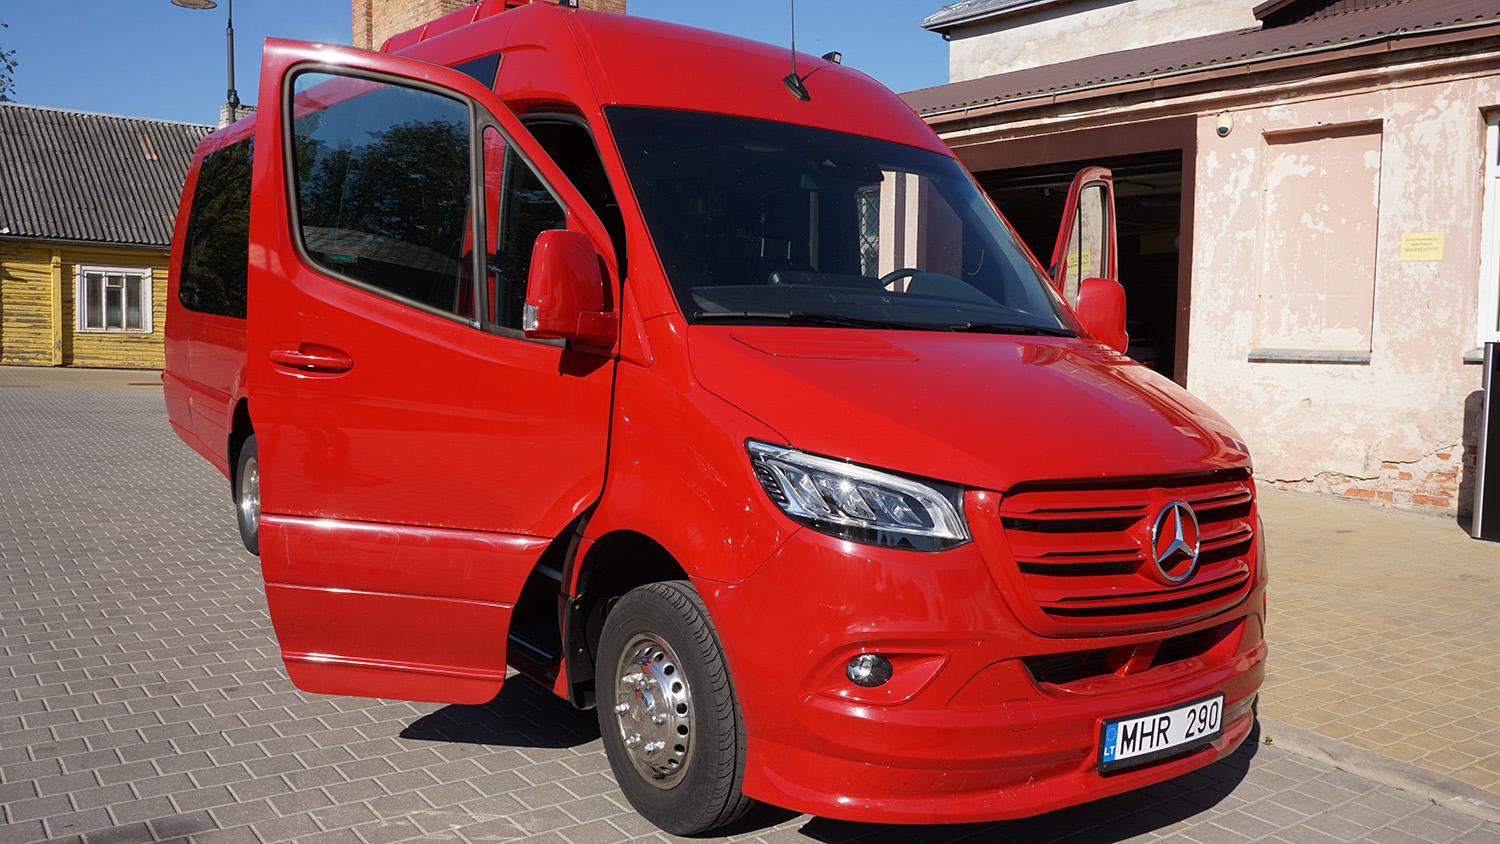 Raudonas autobusas jau atkeliavo į Ukmergę / Daivos Zimblienės nuotr. Rudenį į Ukmergės miesto ir rajono gatves išriedės ryškus Ukmergės Senamiesčio progimnazijos autobusas.